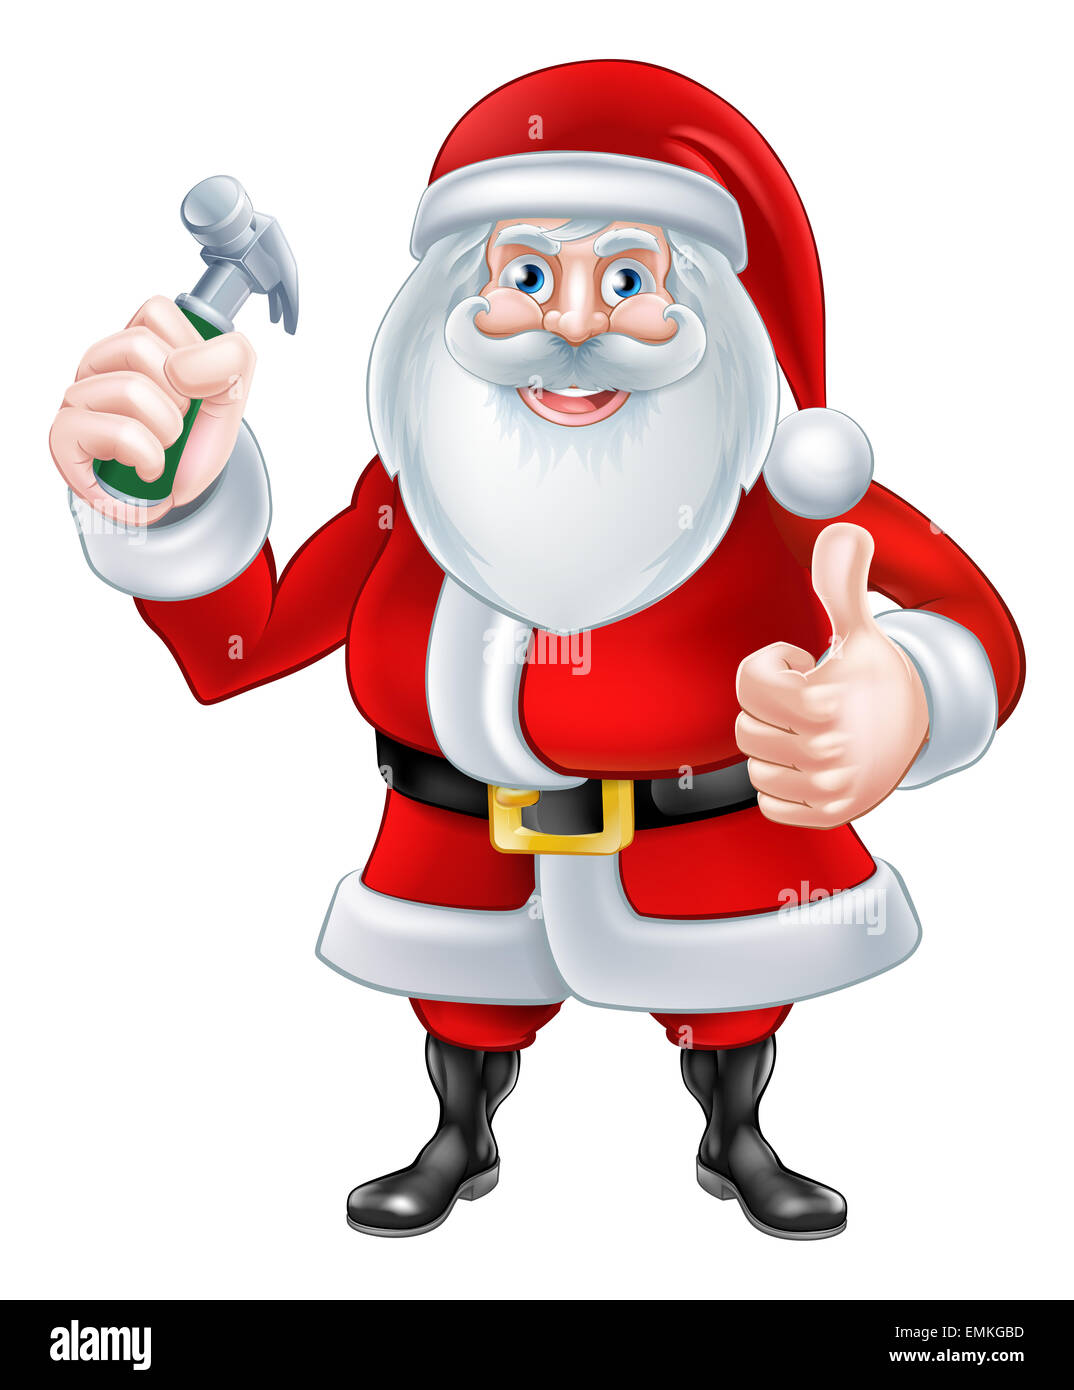 Eine Weihnachten Cartoon Illustration des Weihnachtsmannes halten einen  Hammer und einen Daumen nach oben geben Stockfotografie - Alamy